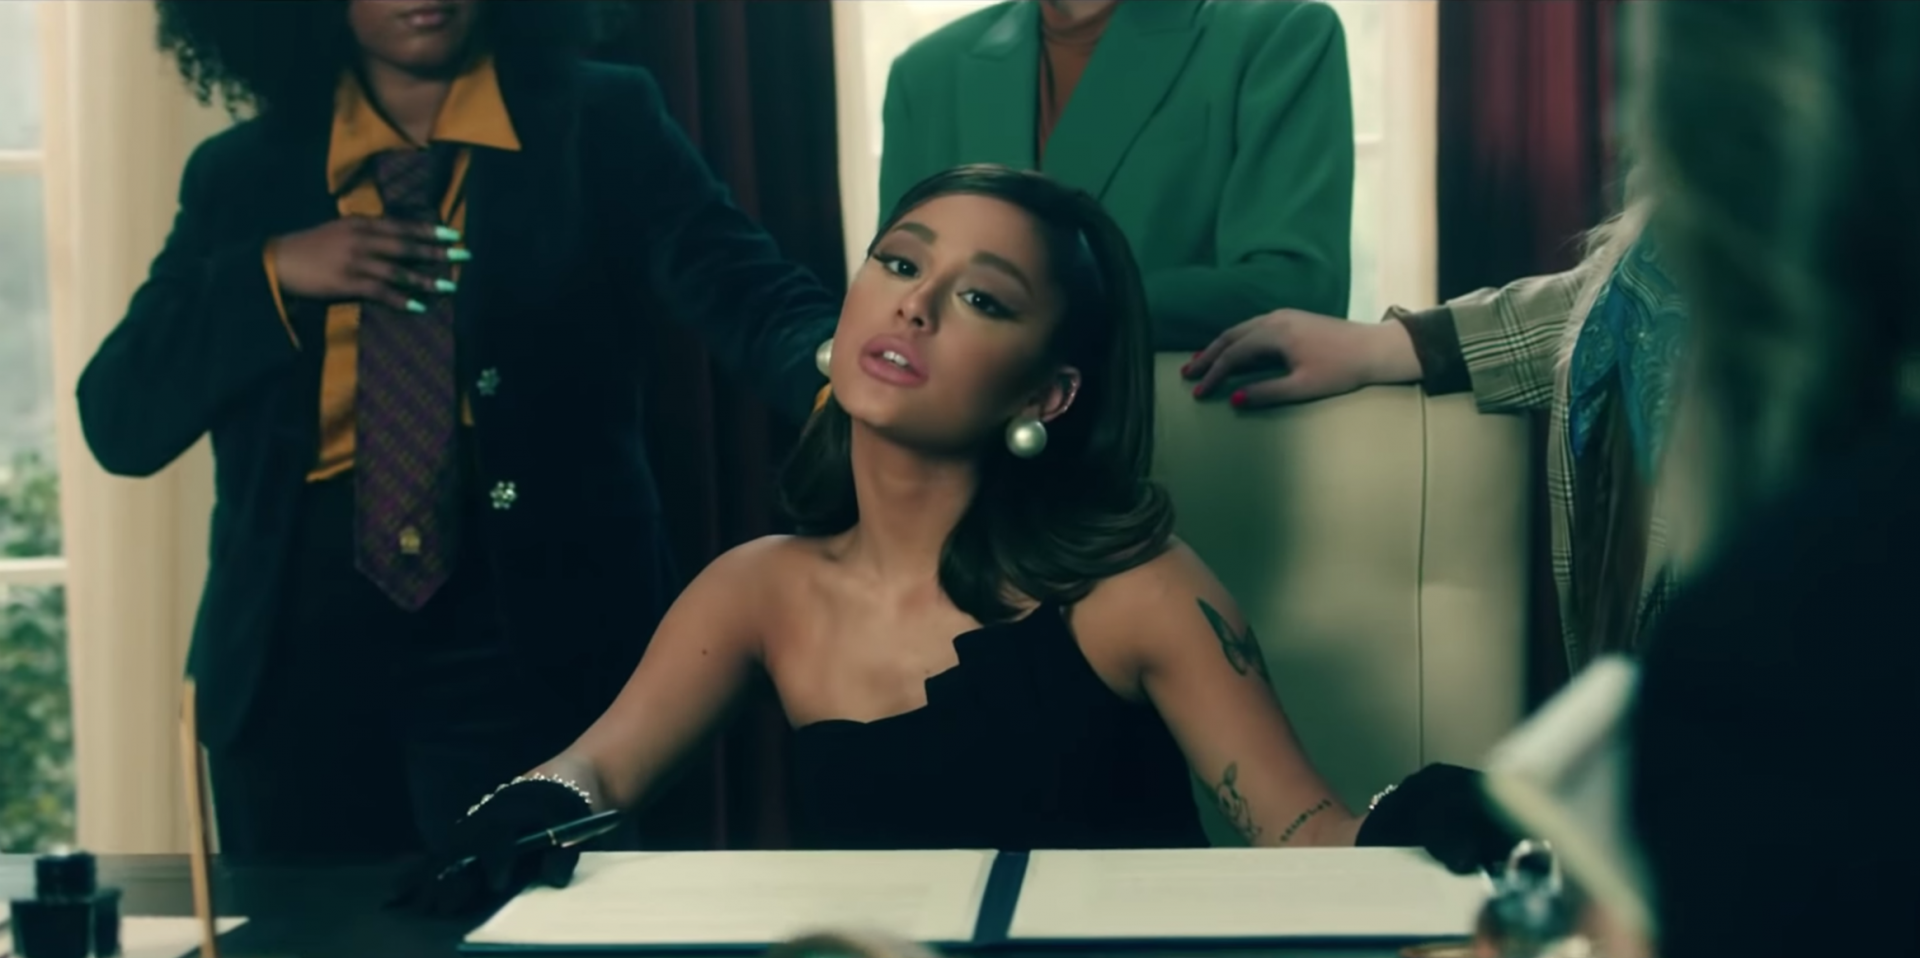 'Bóc giá' các item thời trang nghìn USD trong MV mới của Ariana Grande - Ảnh 6